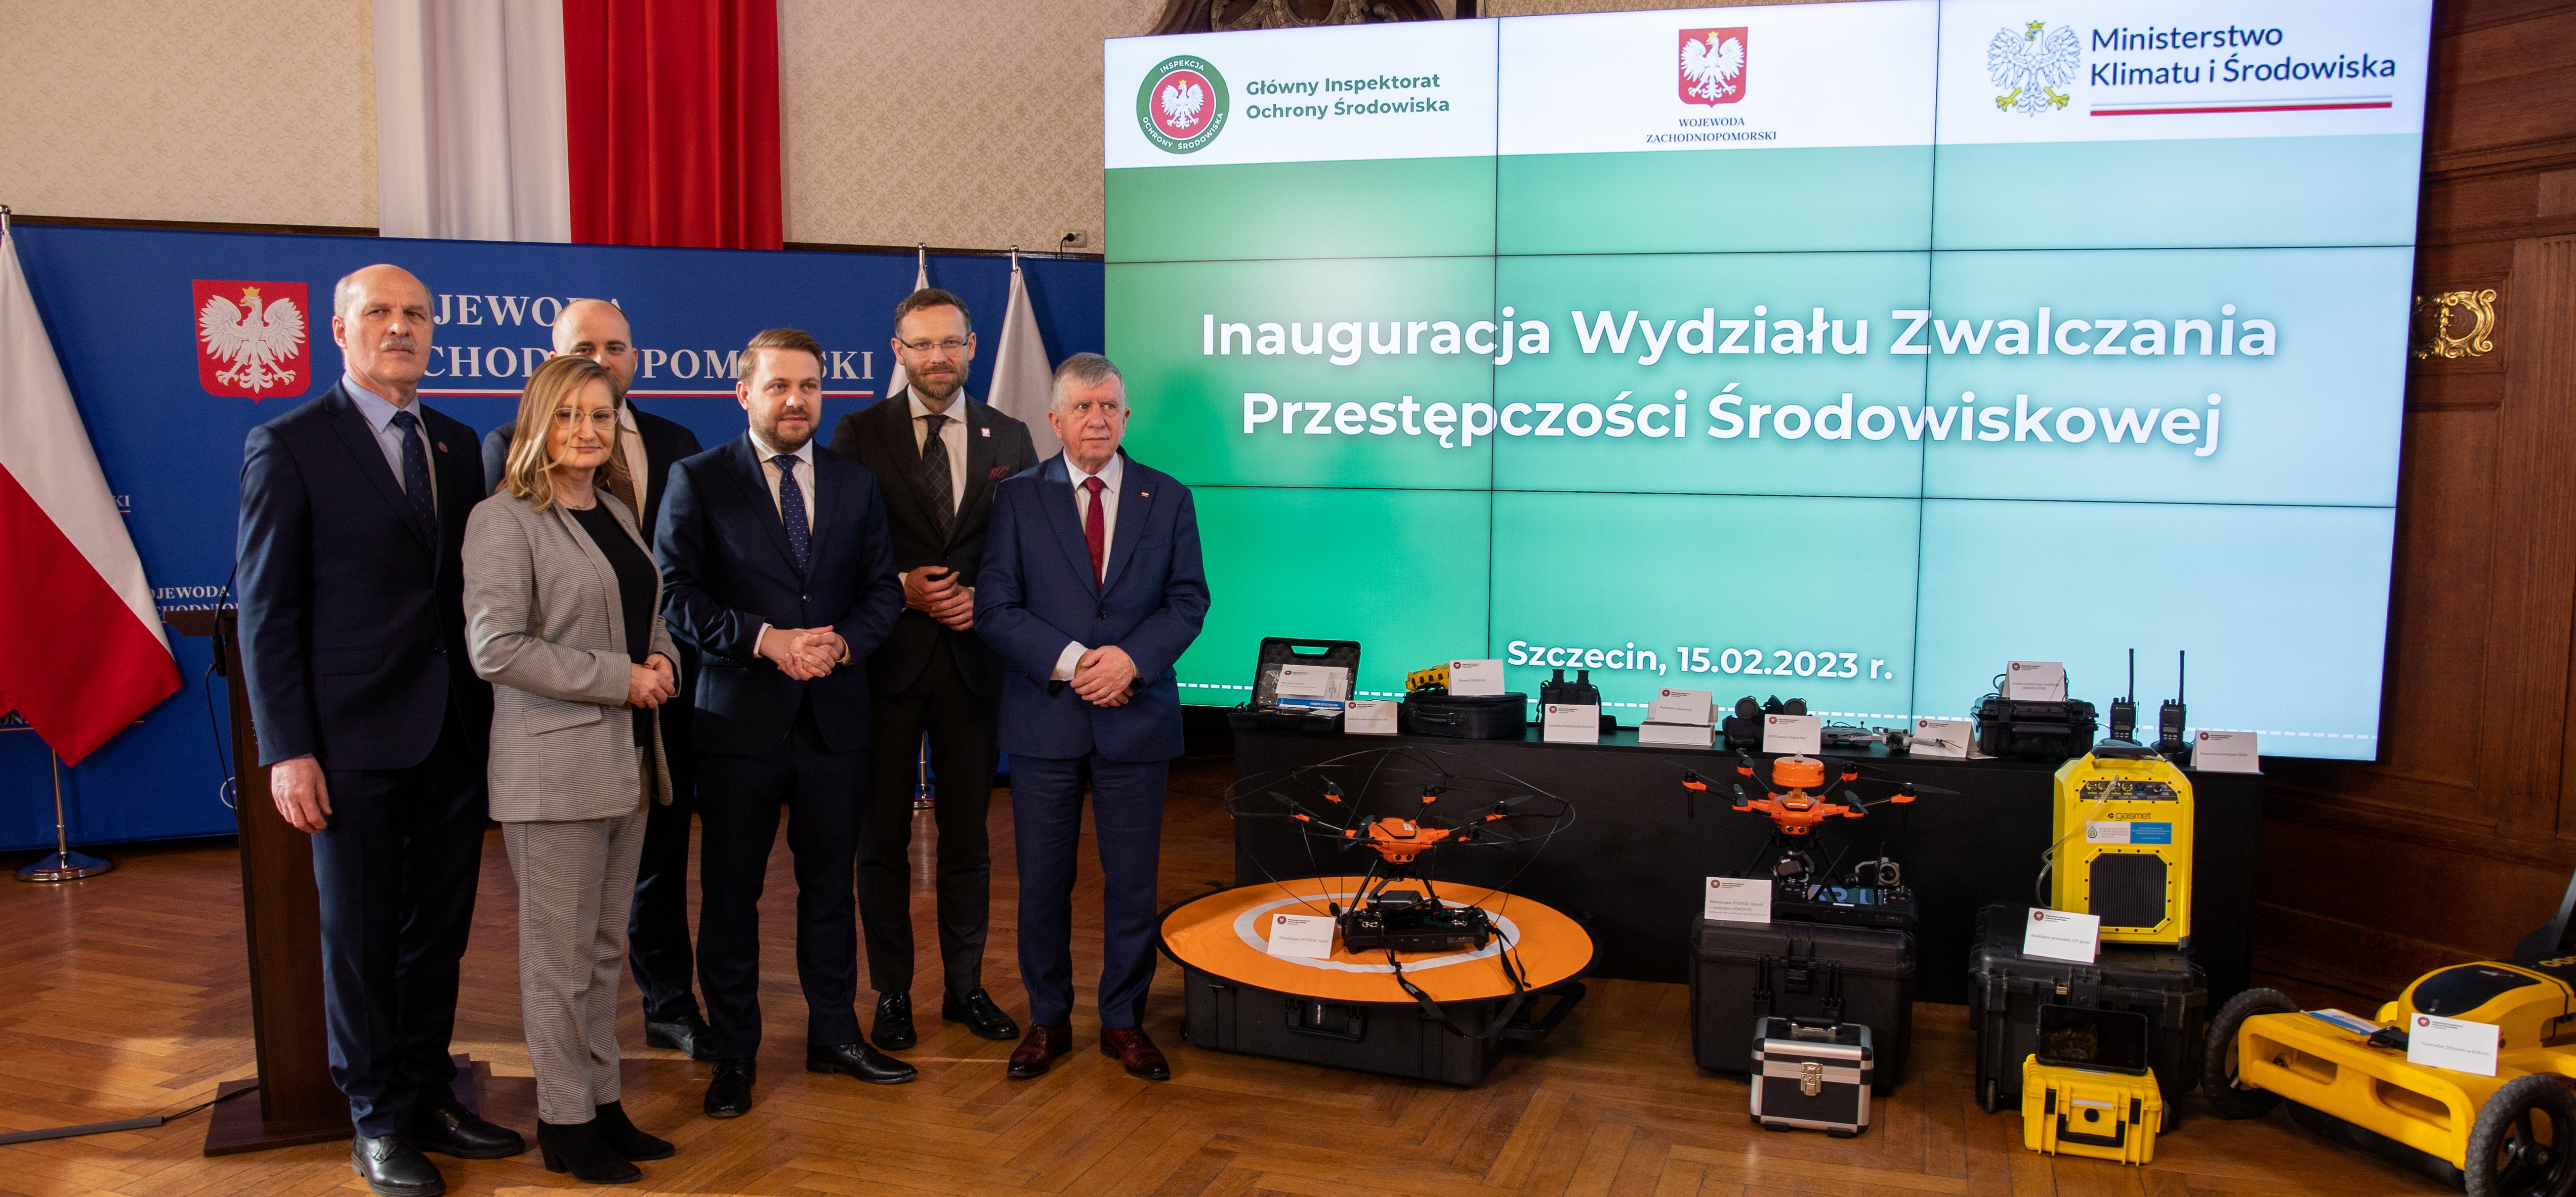 Inauguracja Wydziału Zwalczania Przestępczości Środowiskowej w Szczecinie